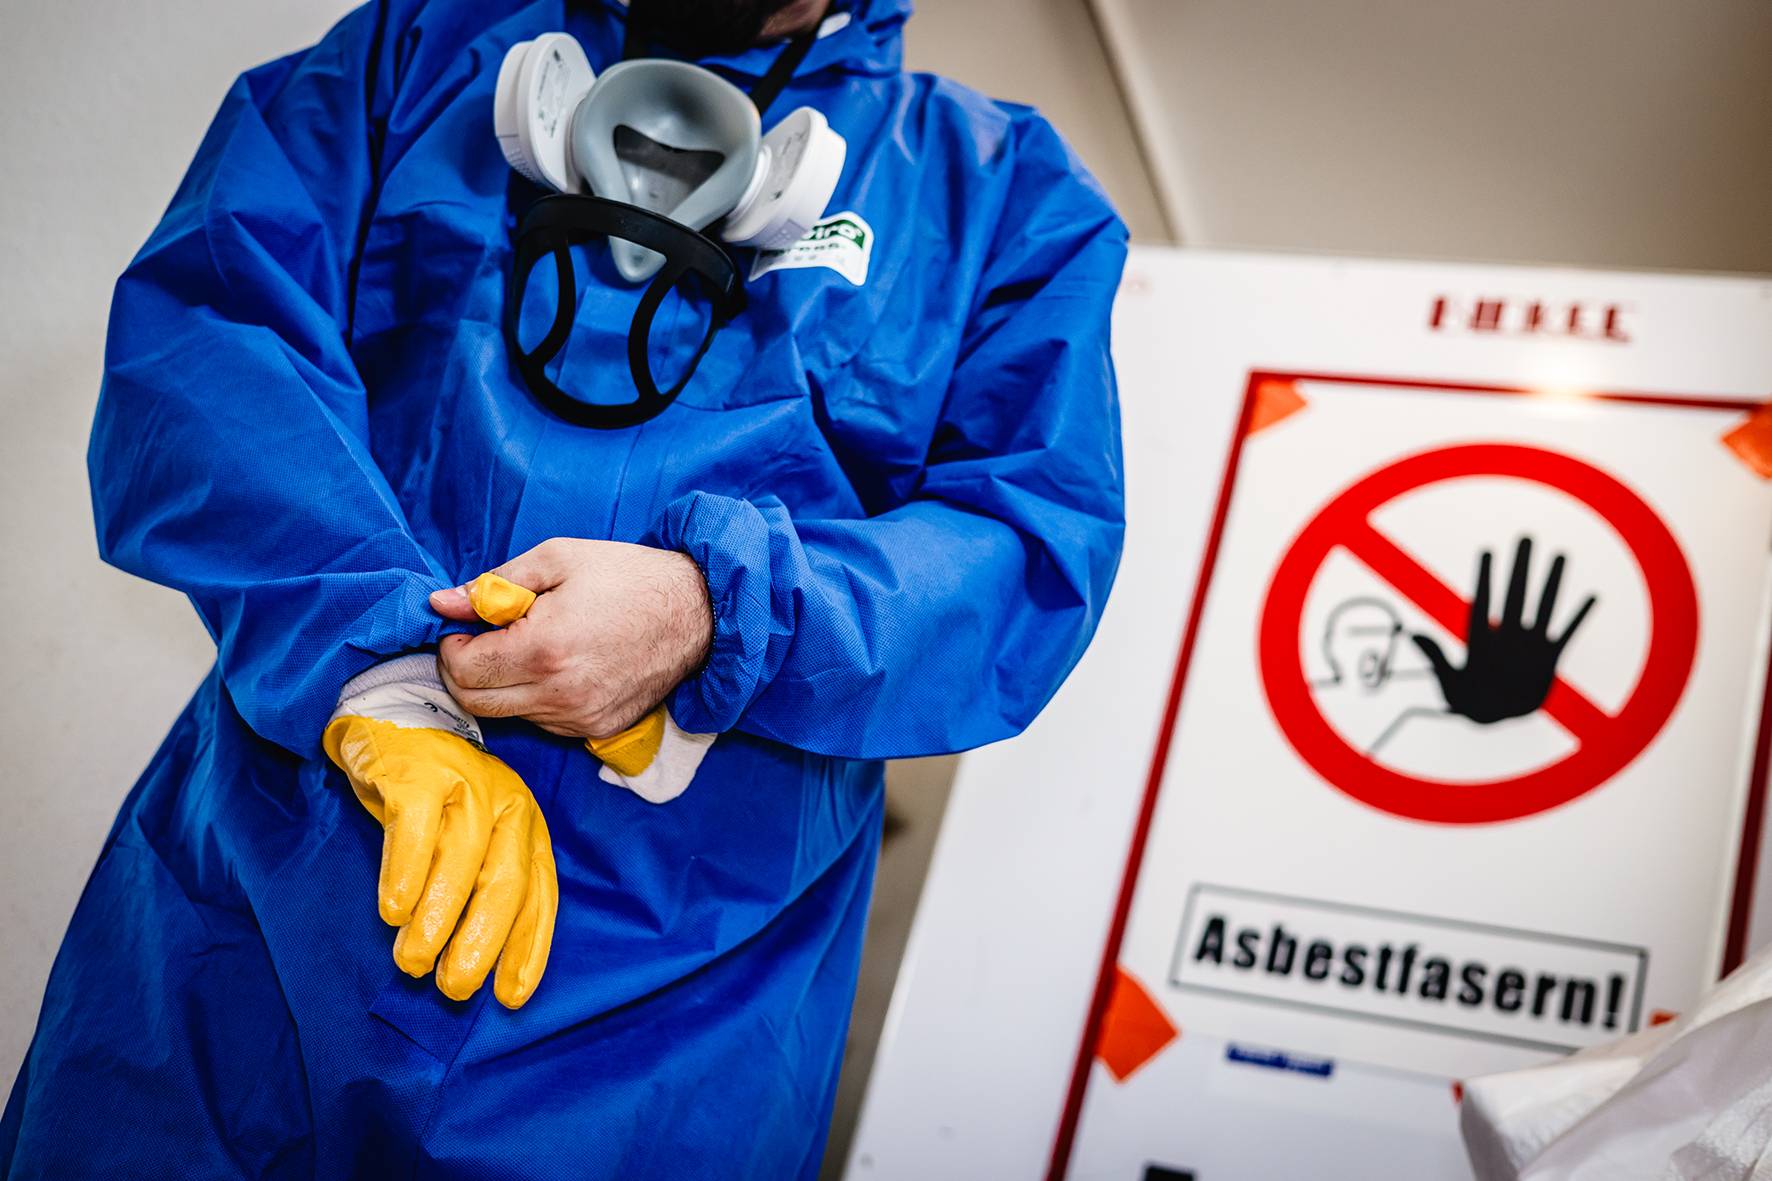 64.200 Wohnhäuser im Rhein-Kreis sind „Asbest-Fallen“